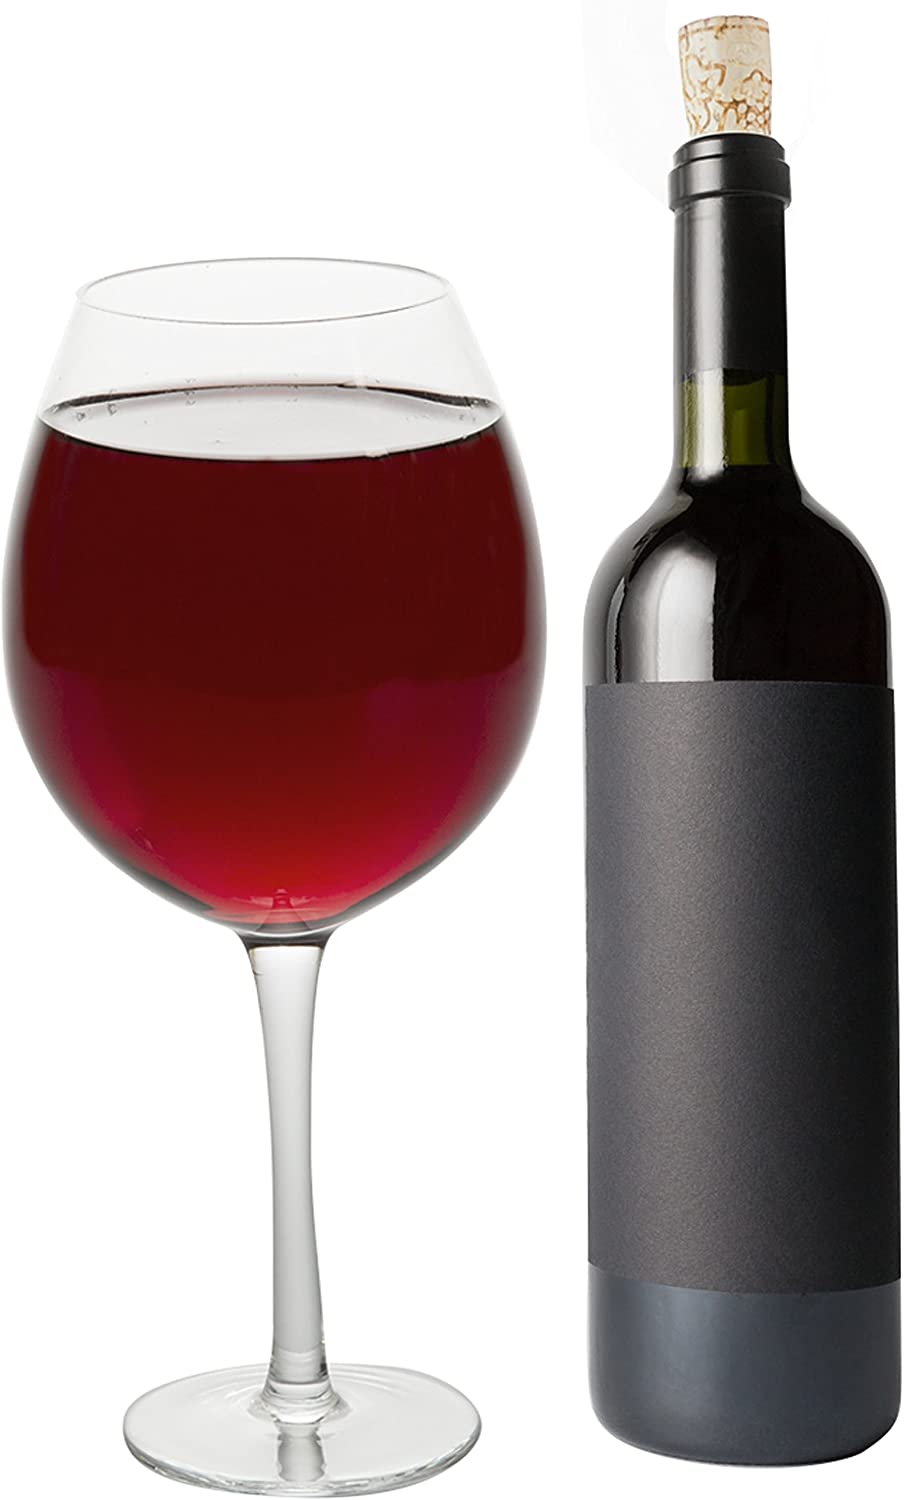 Oversized XL Giant Wine Glass - 750 ml - Holds a full bottle of wine!